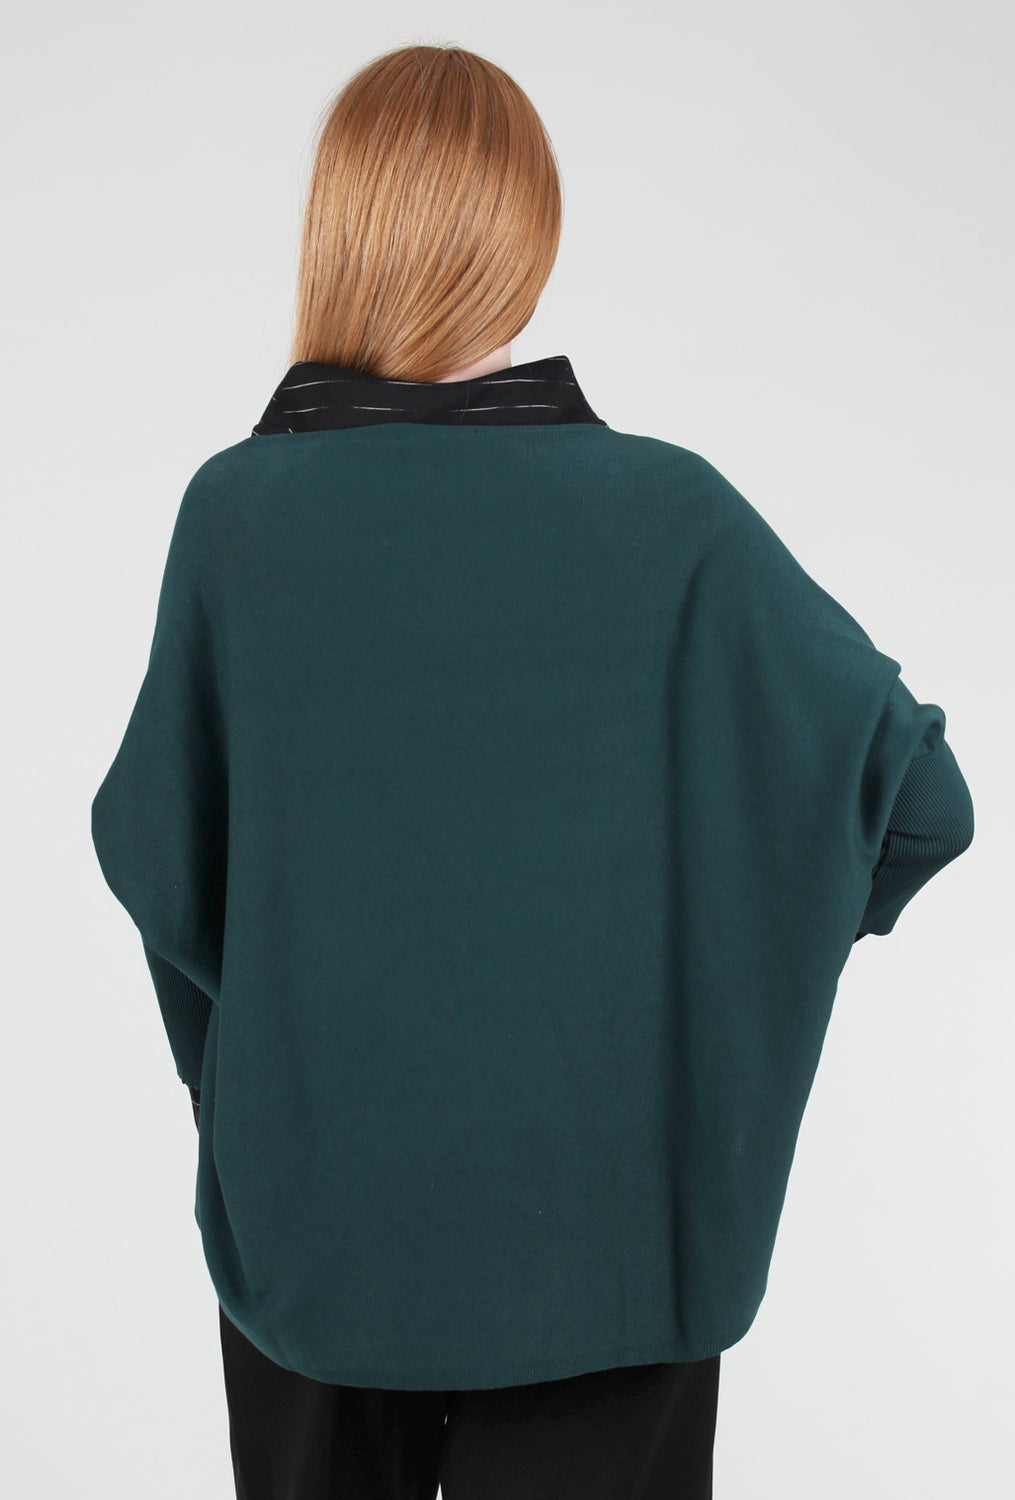 Kozan Two-Way Sweater, Teal 